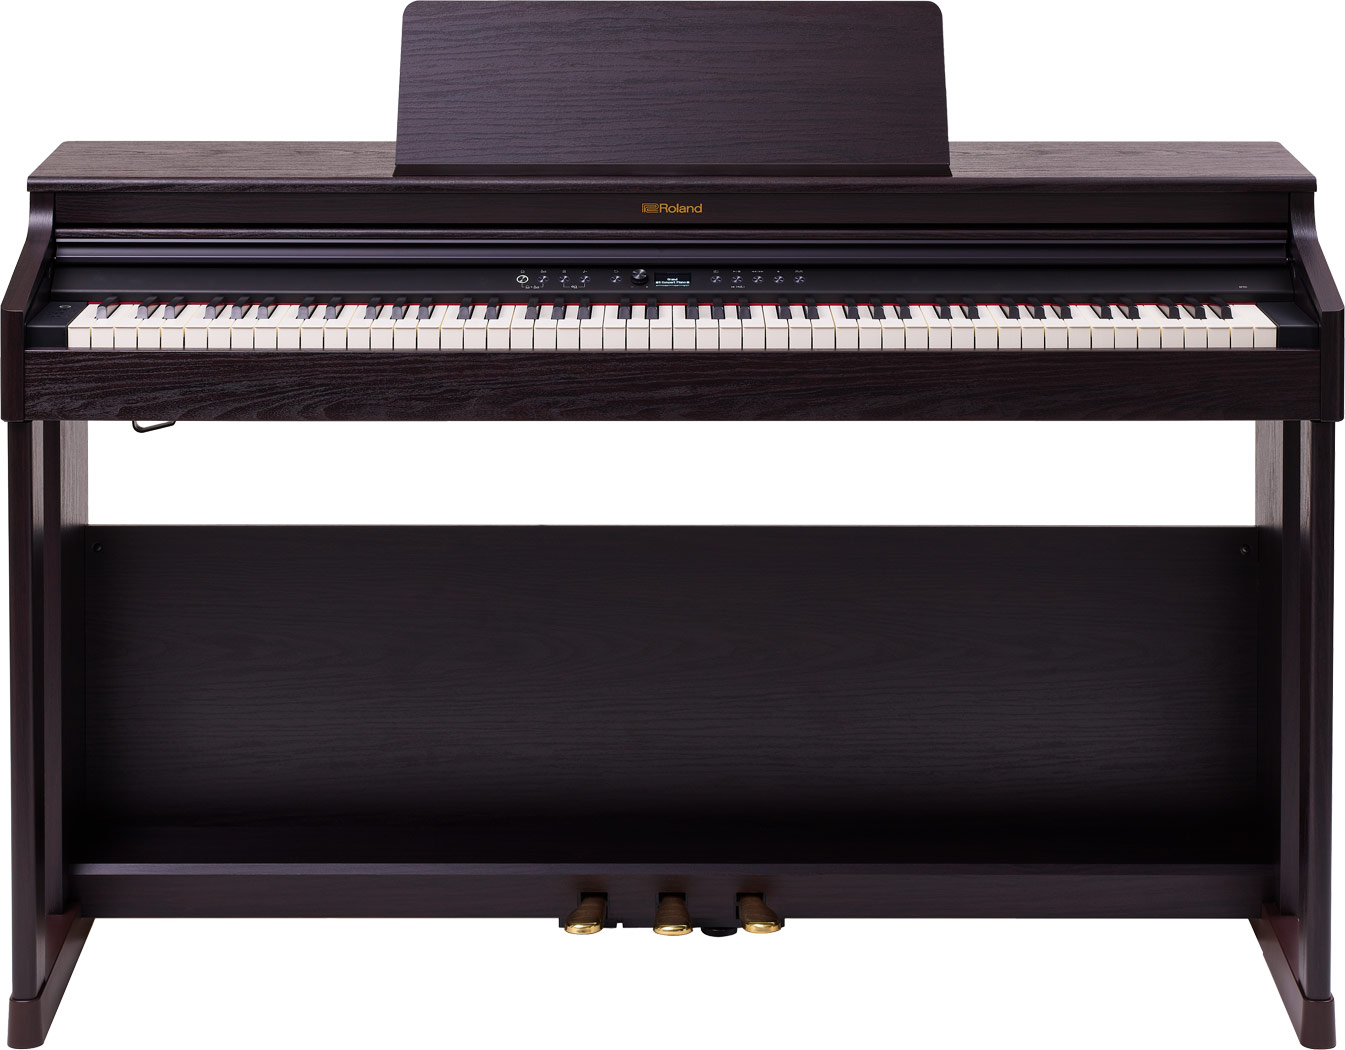 Цифровые пианино Roland RP701-DR гринберг наследие марии гринберг том 5 рахманинов концерт 3 для фортепиано с оркестро